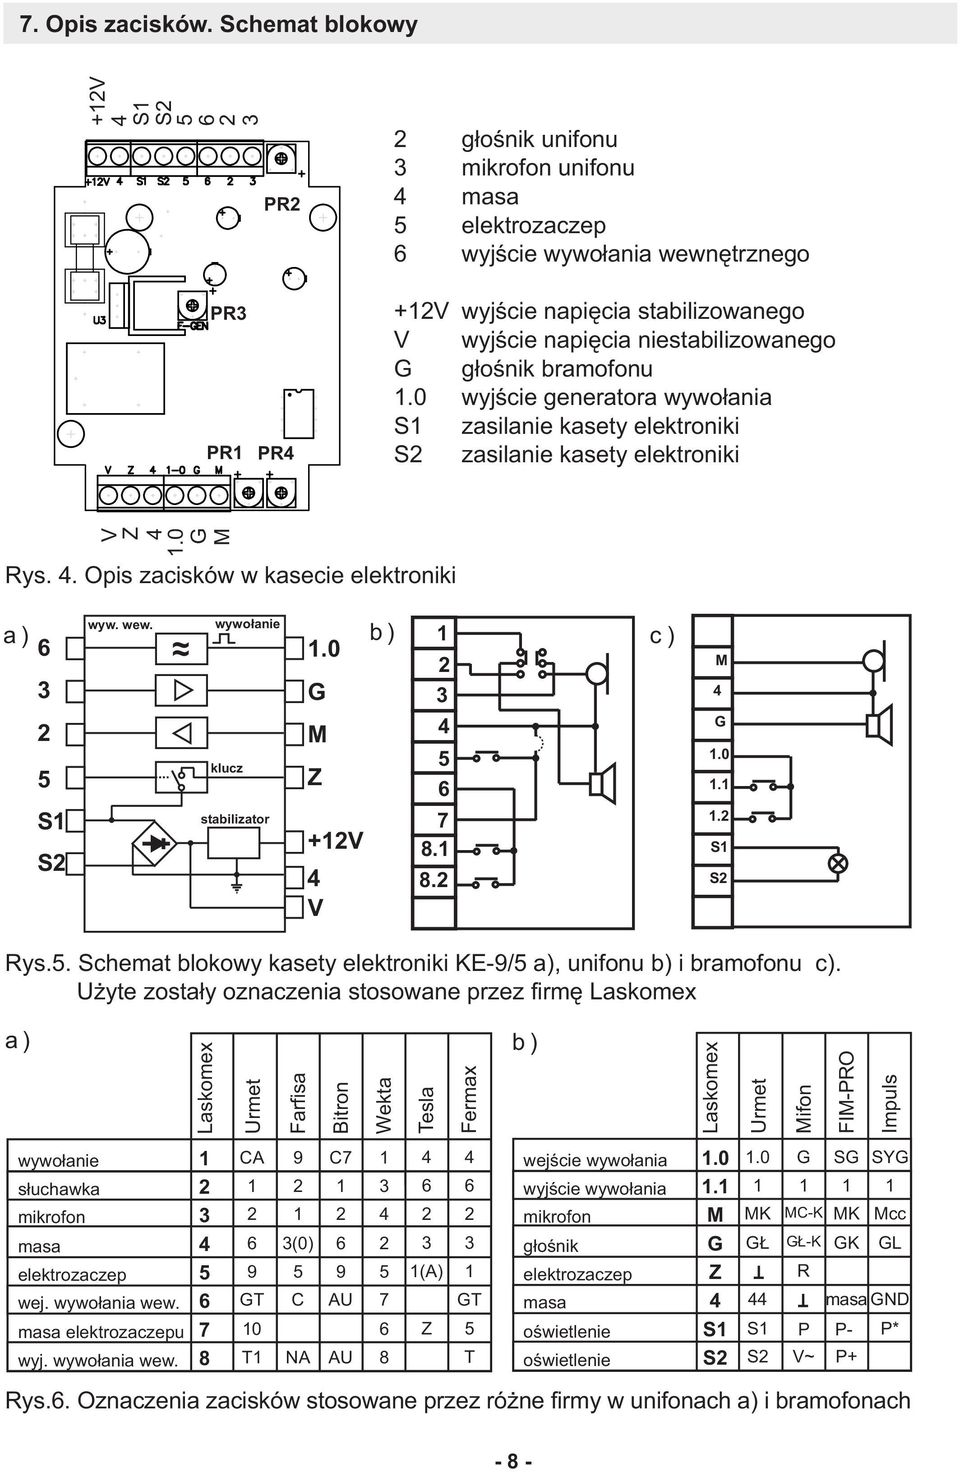 niestabilizowanego G g³oœnik bramofonu.0 wyjœcie generatora wywo³ania S zasilanie kasety elektroniki S zasilanie kasety elektroniki V Z.0 G M Rys.. Opis zacisków w kasecie elektroniki a) 3 5 S S wyw.